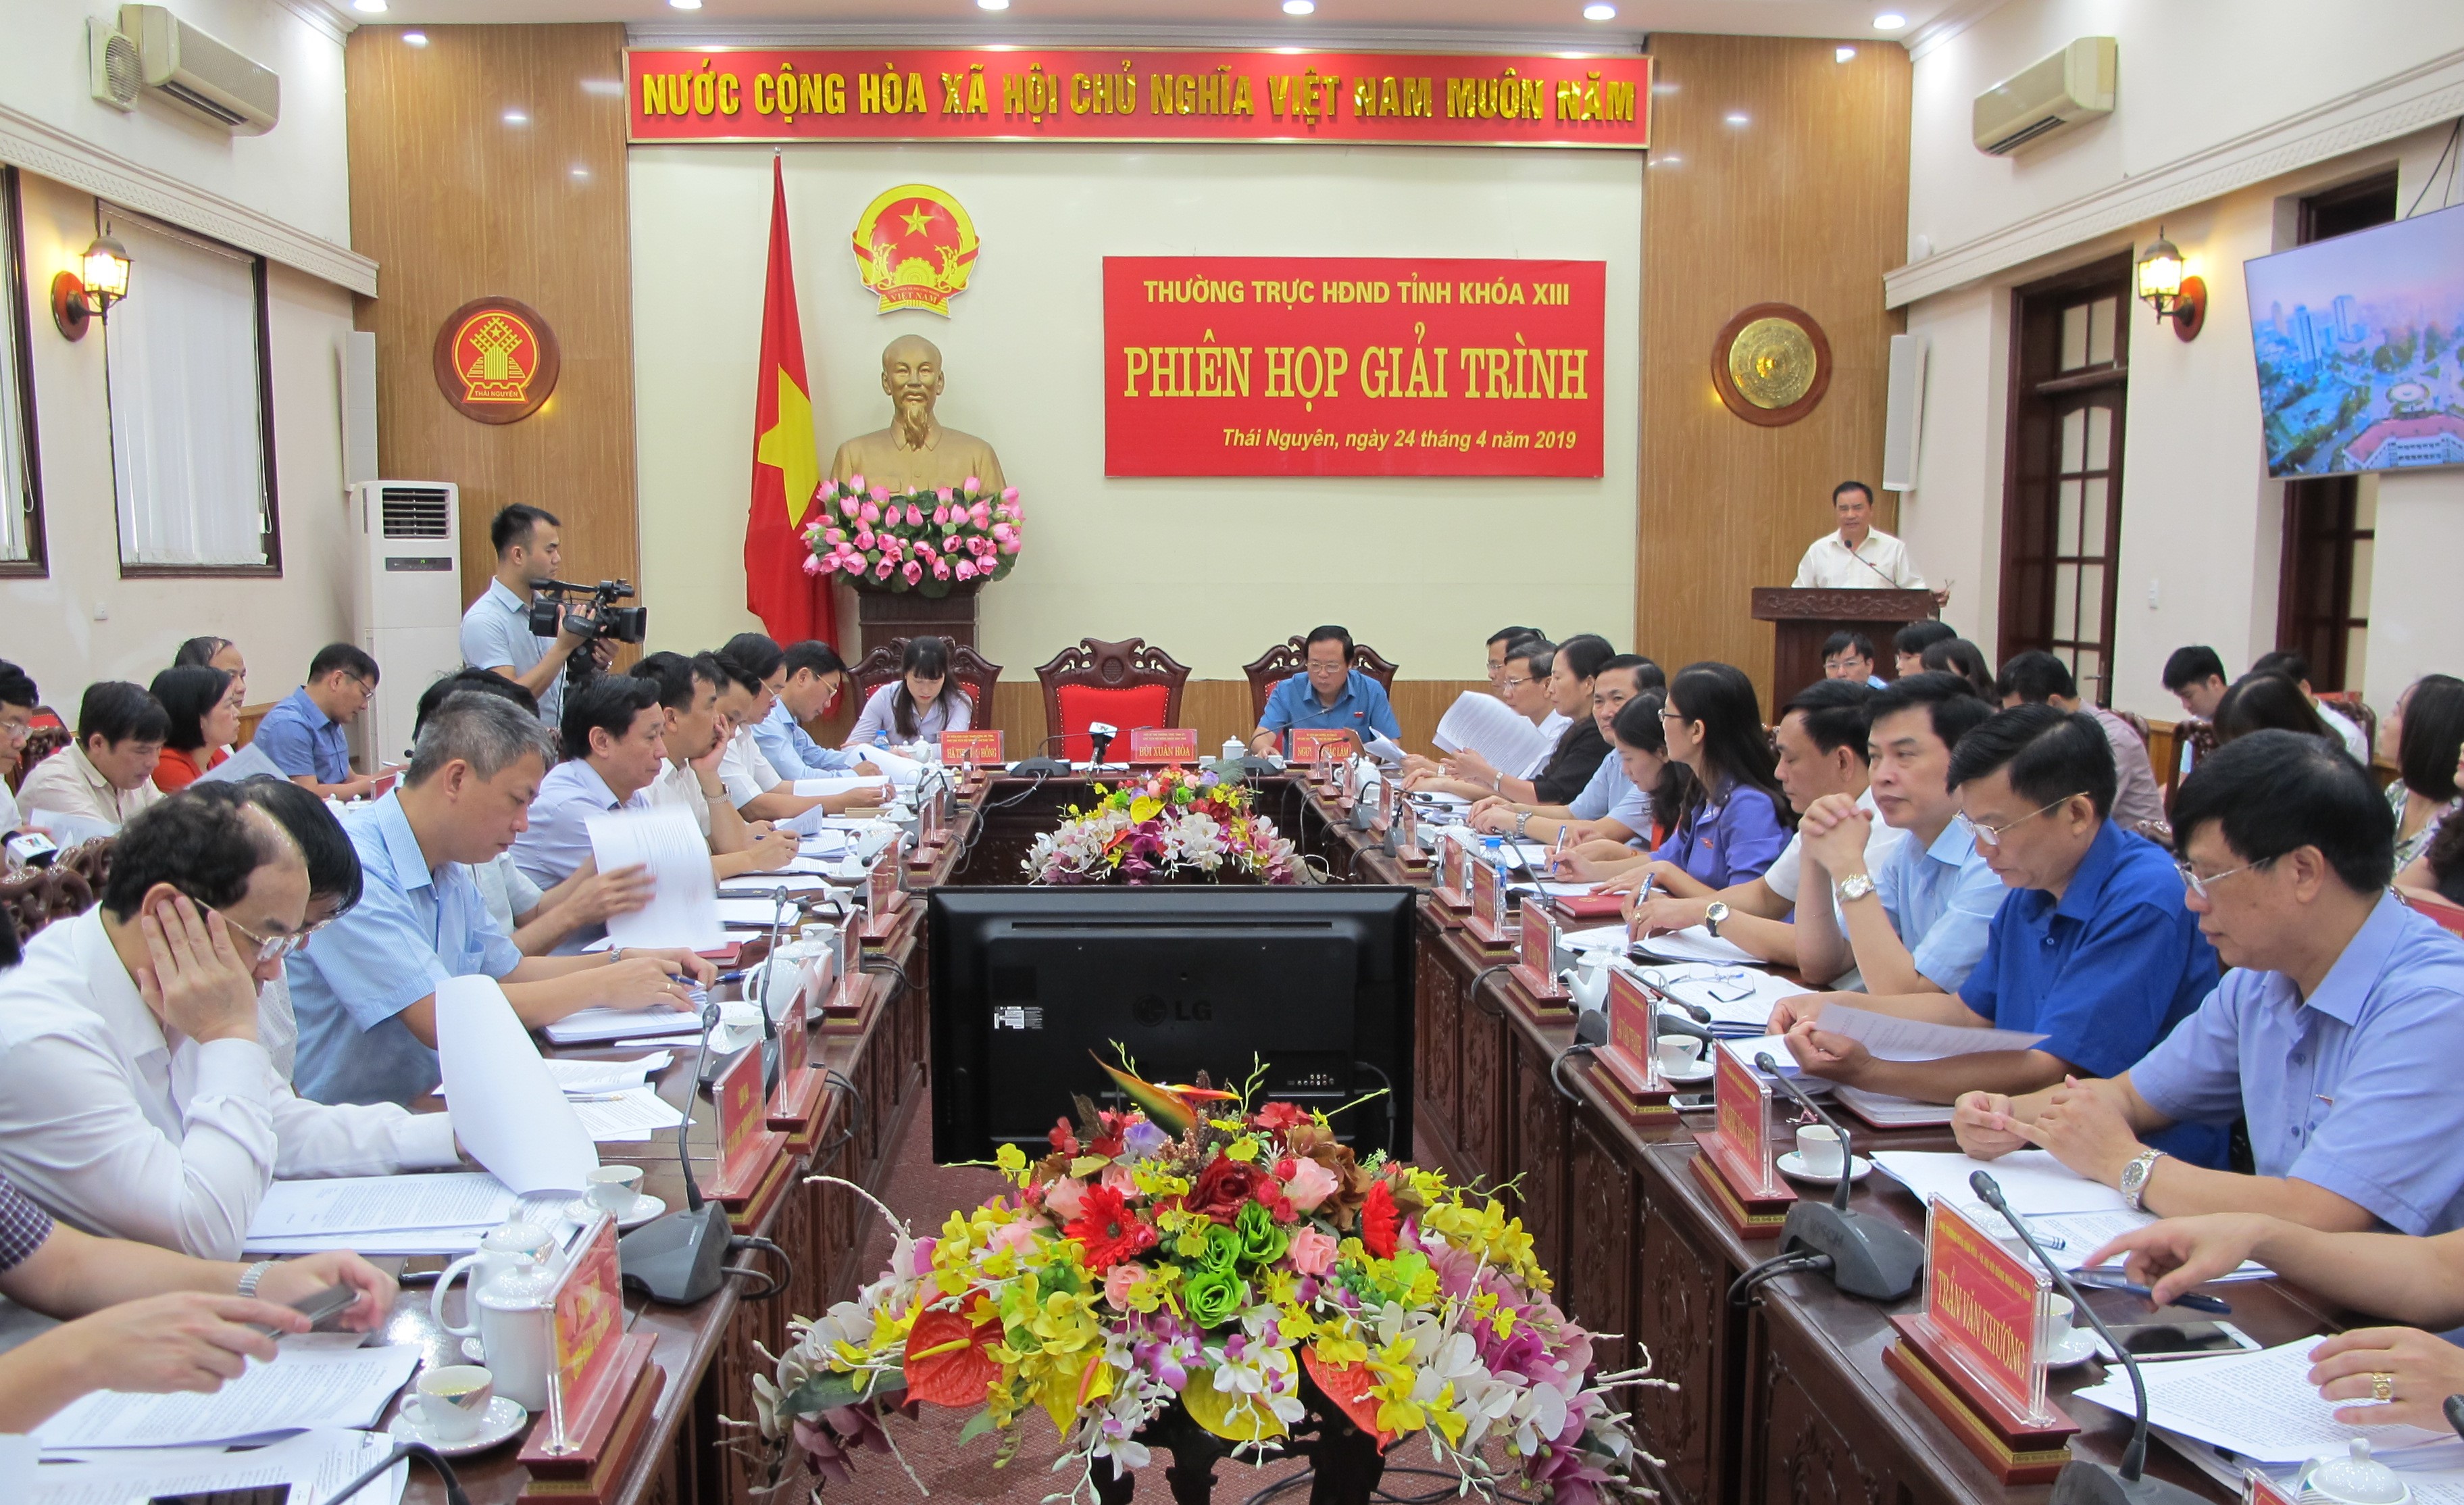 Một phiên họp giải trình của Thường trực HĐND tỉnh Thái Nguyên nhiệm kỳ 2016 - 2021